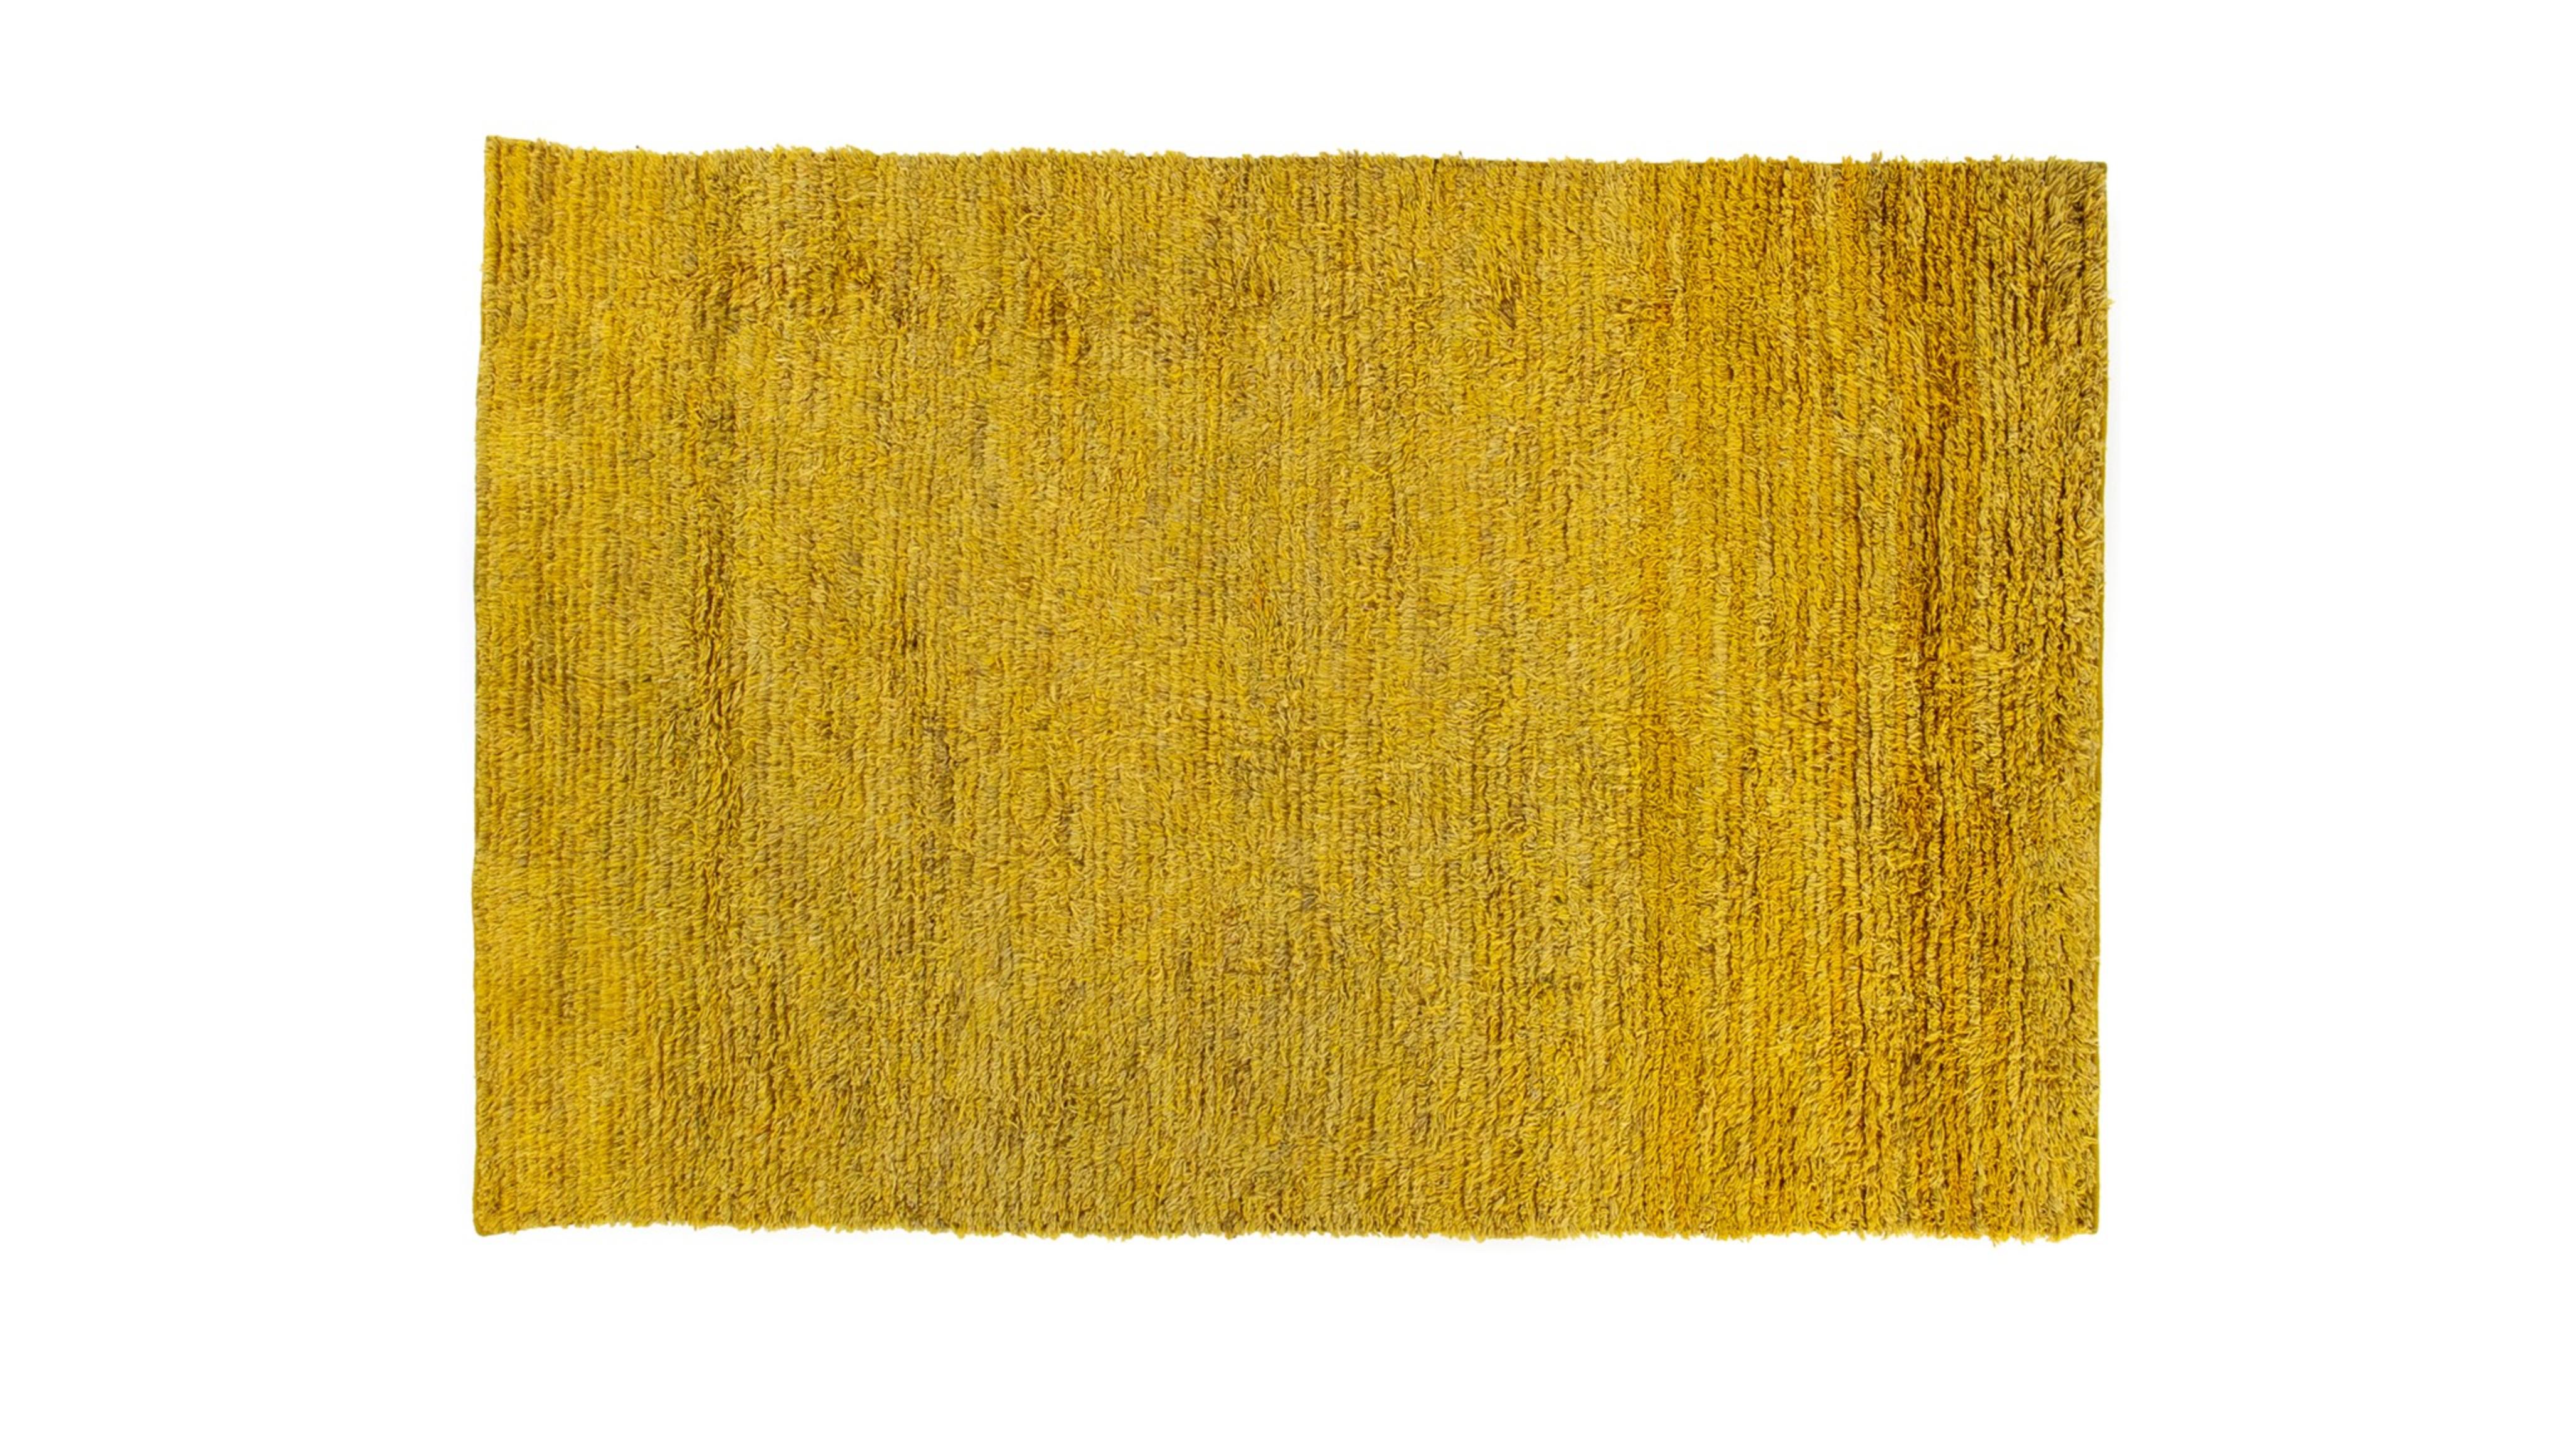 Gabbeh-Teppich von Taher Asad Bakhtiari
Abmessungen: B 190 x L 290 cm
MATERIALIEN: Wolle

Taher Asad-Bakhtiari (B.1982, Teheran) ist ein autodidaktischer Künstler, dessen Praxis sich auf Objekte, Textilien und Erfahrungen konzentriert, aber nicht